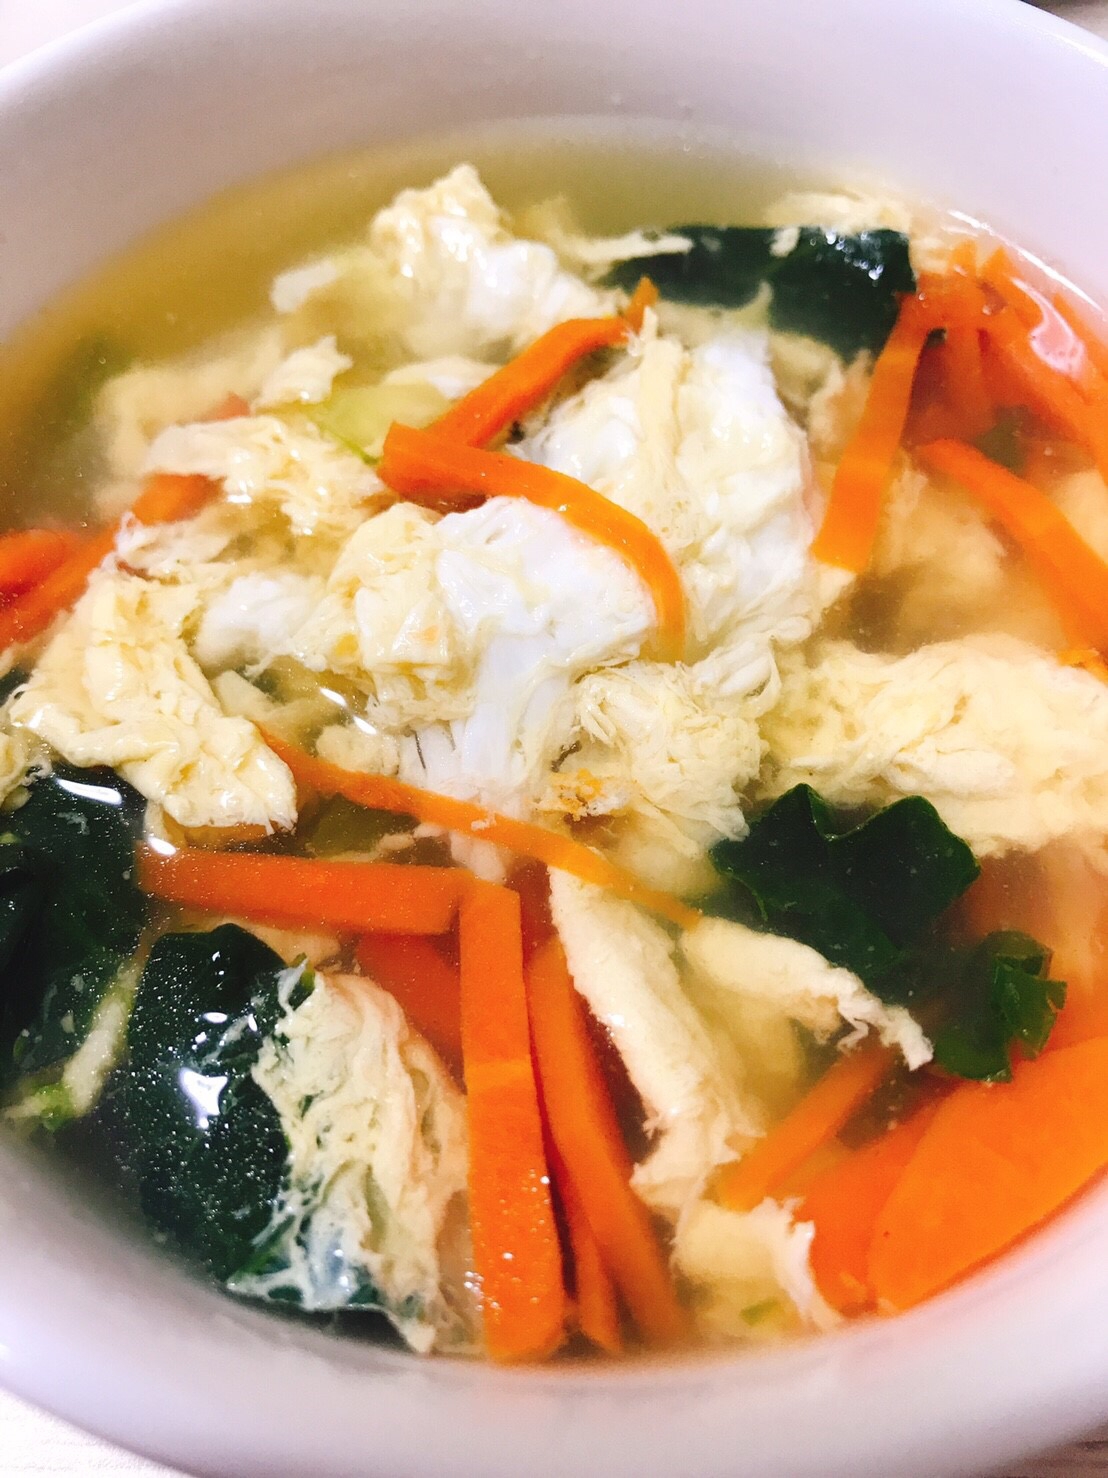 野菜たっぷり卵スープ